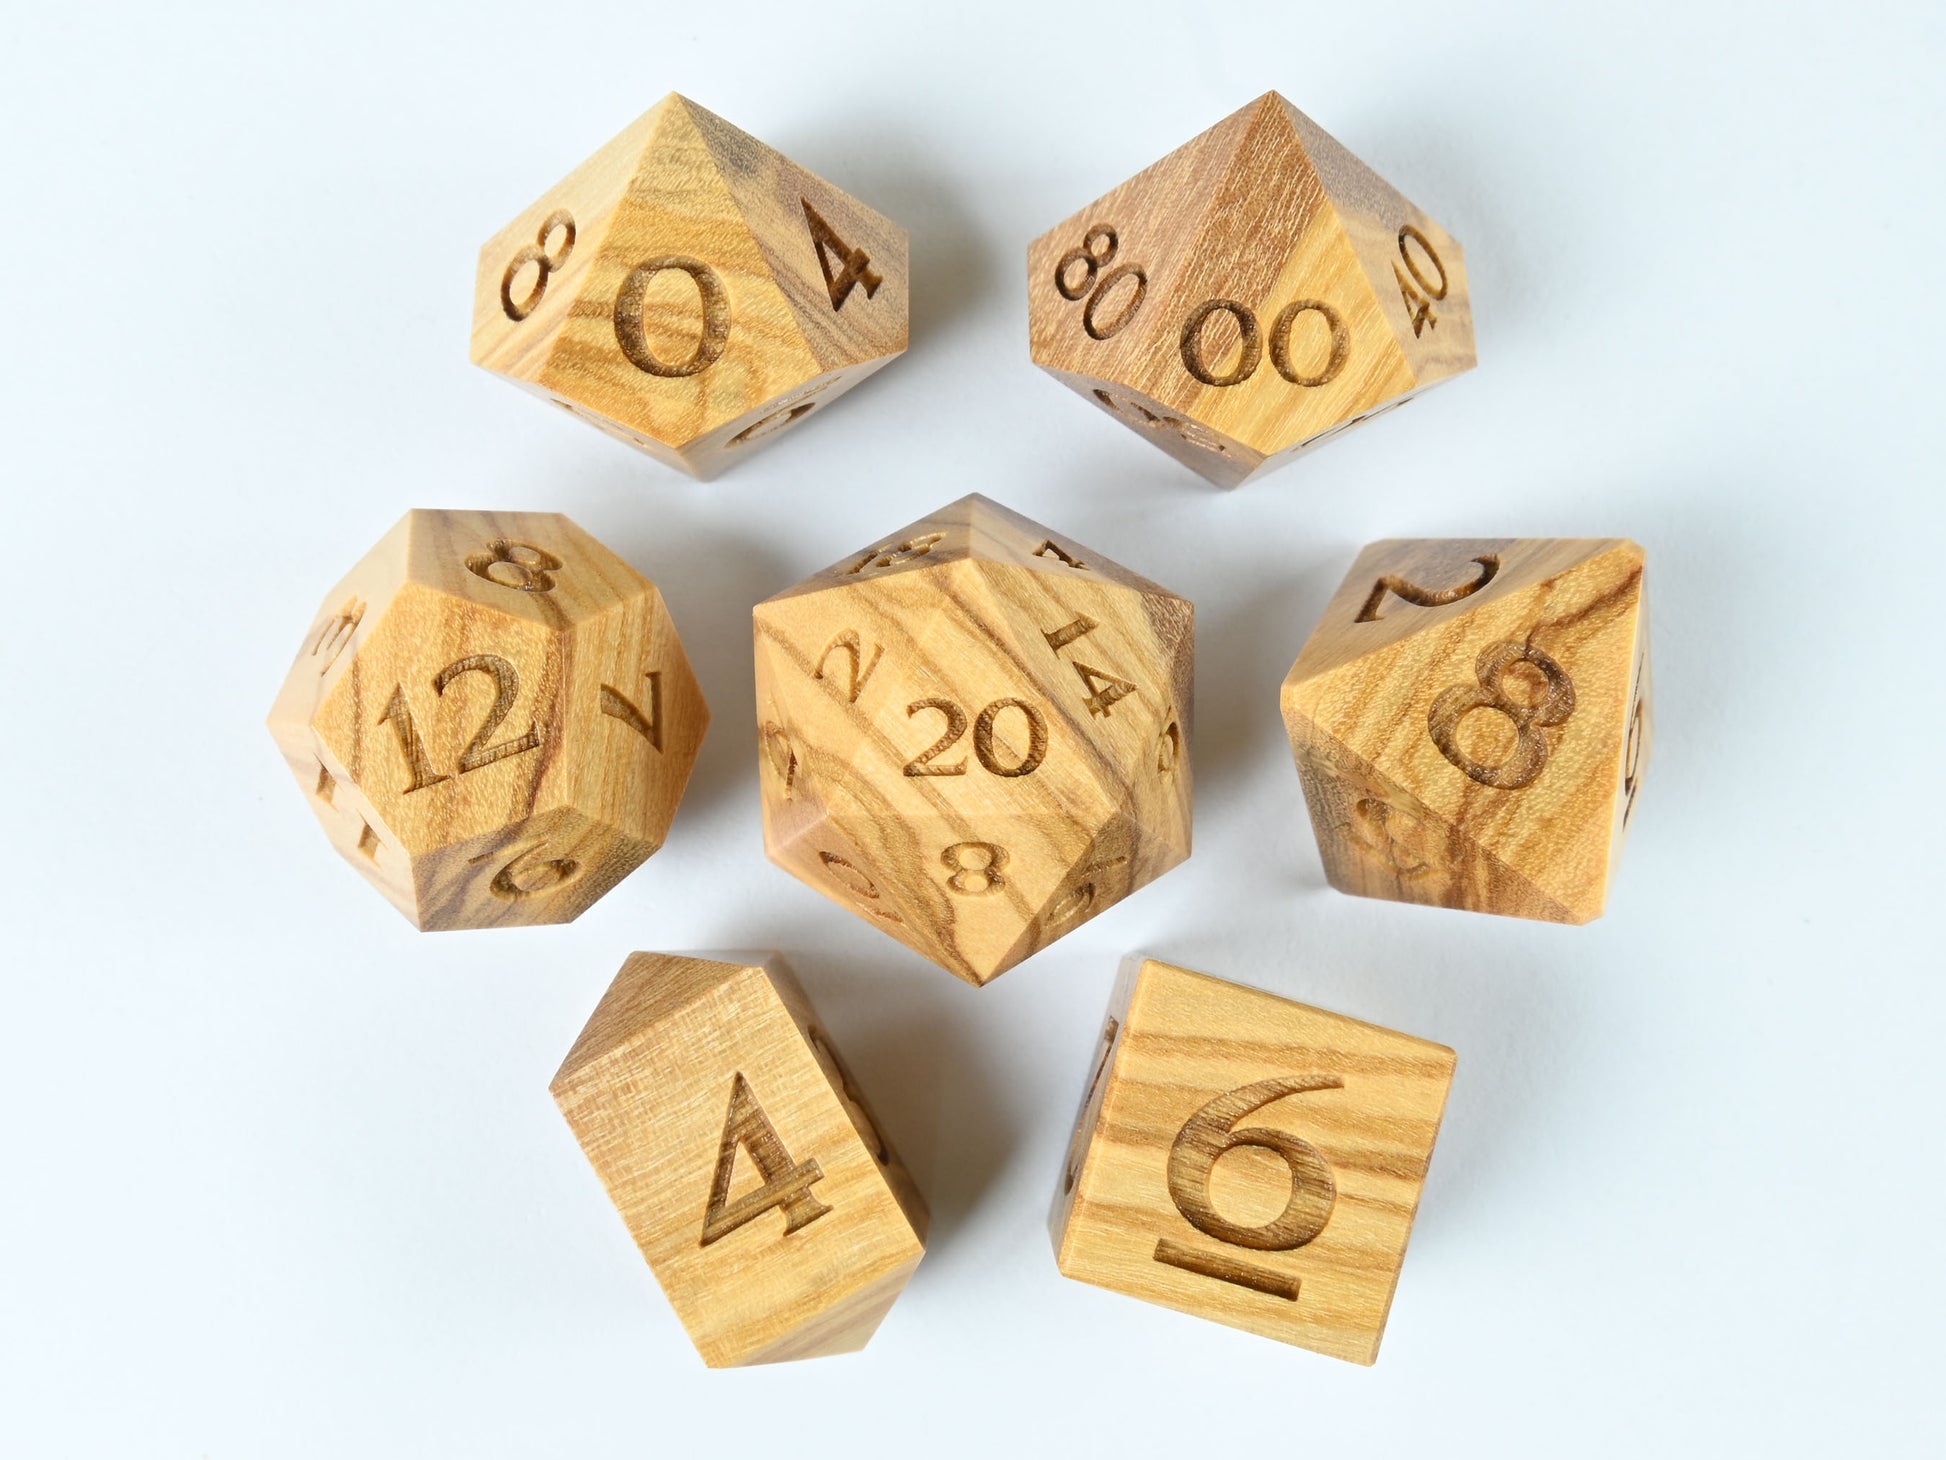 Olivewood dice set for dnd rpg